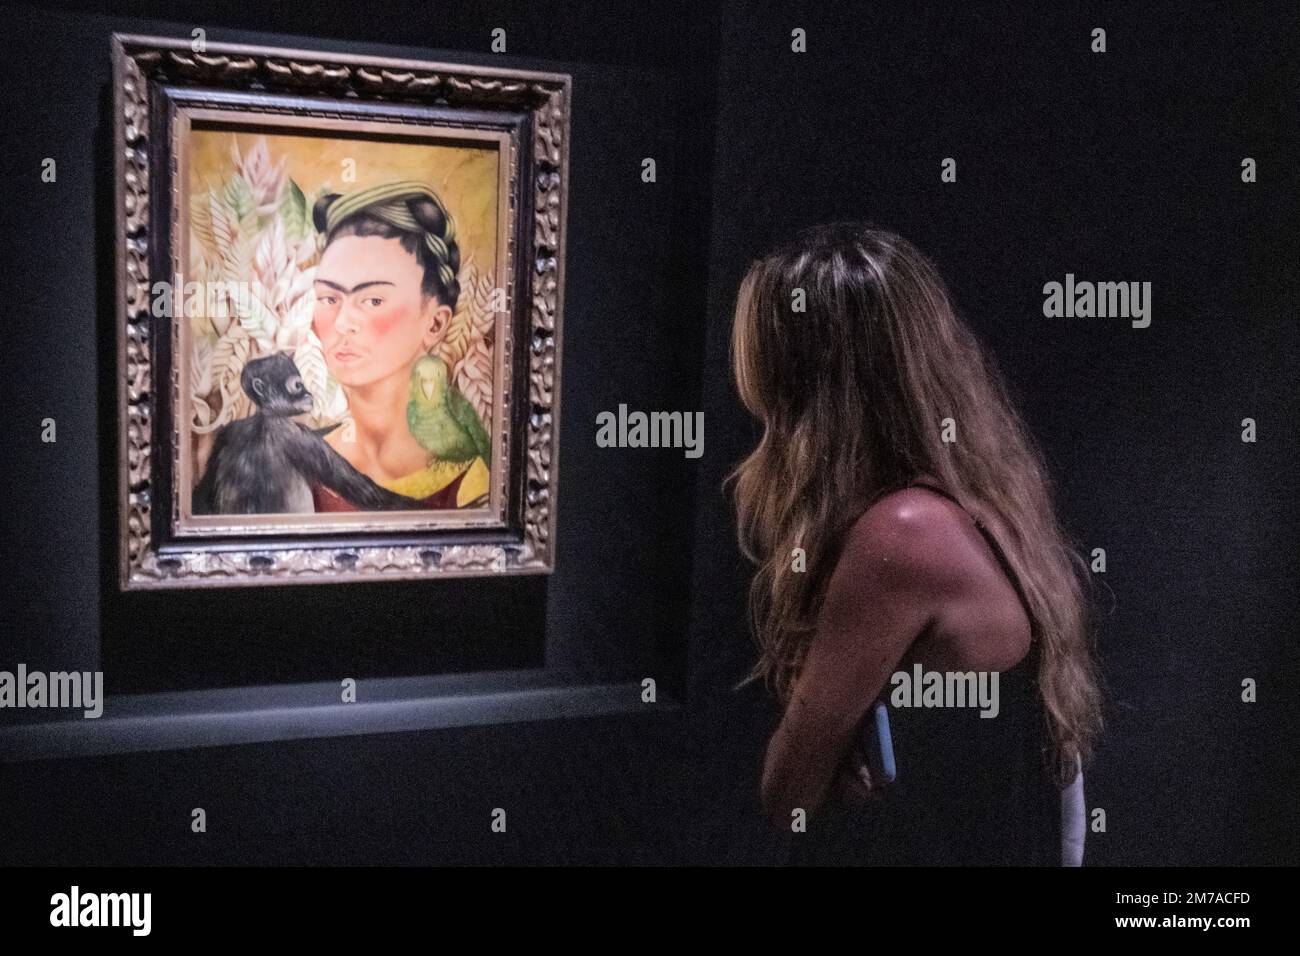 Frida Kahlo : 'Autorretrato con chango y loro' (Autoportrait avec singe et perroquet) - (1942). Museo de Arte Latinoamericano (MALBA). Buenos Aires, Argentine Banque D'Images